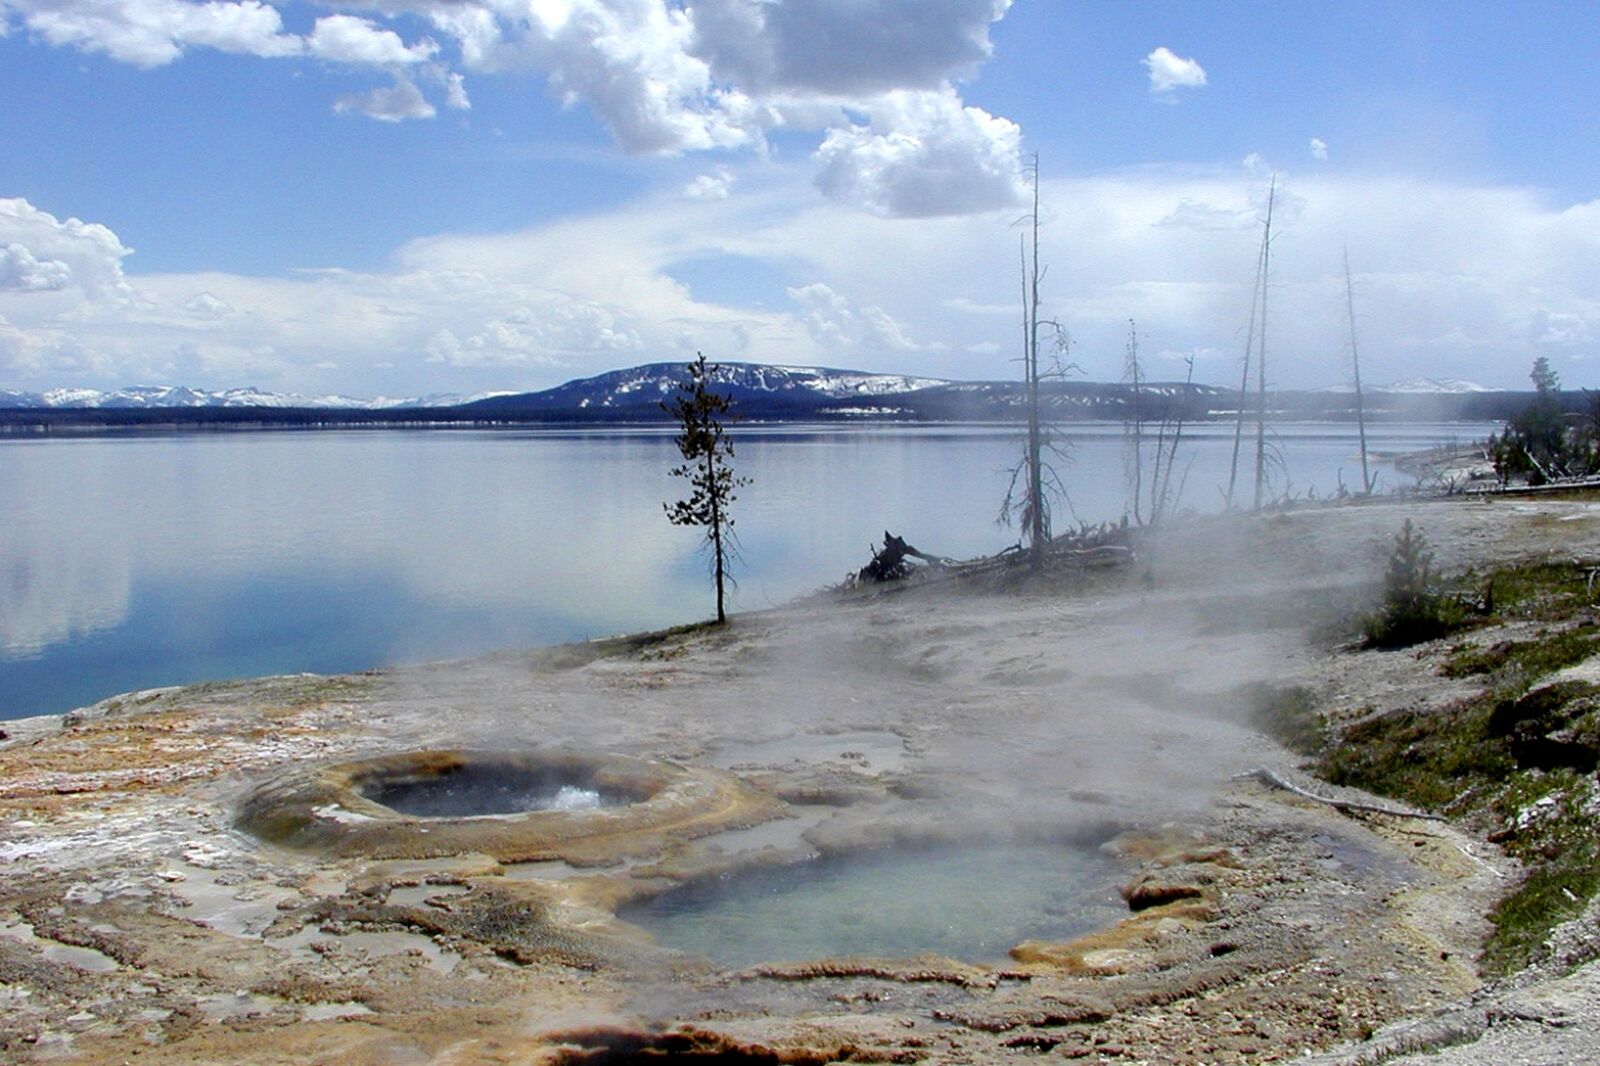 Olympus C2100UZ sample photo. Yellowstone lake, wyoming, water photography